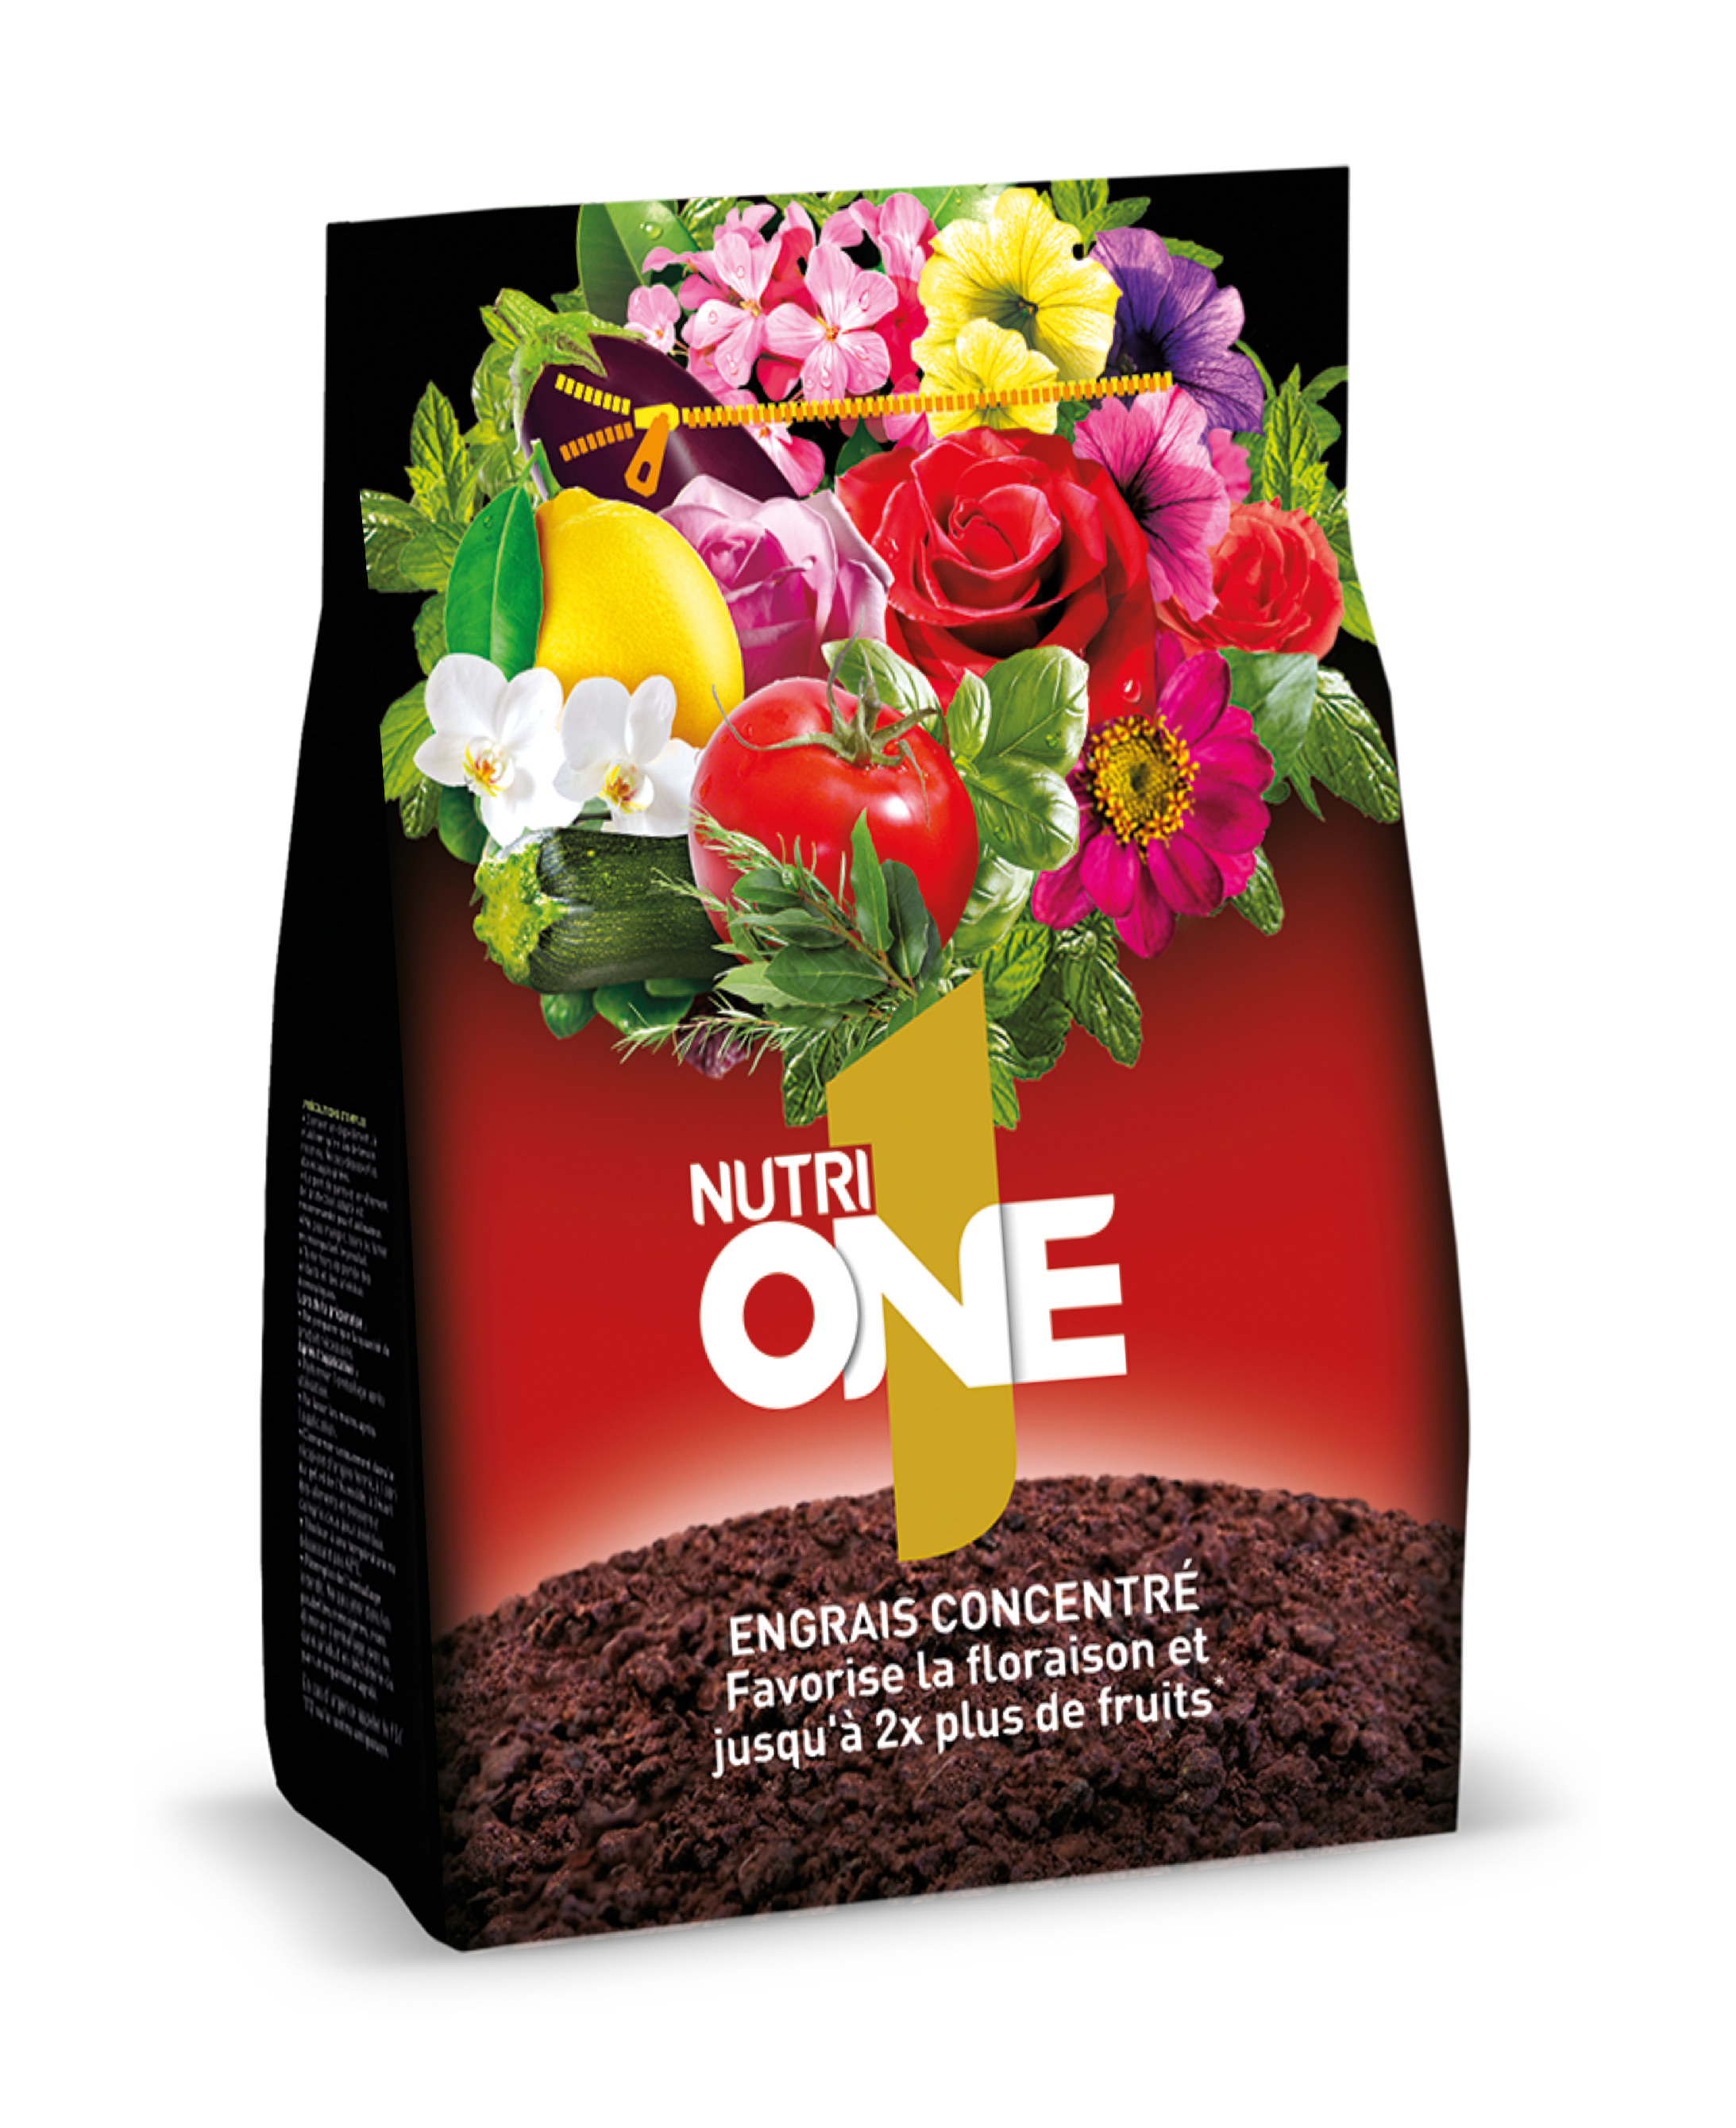 Onegra1 | engrais granule | 1kg | pour une bonne floraison et de belle